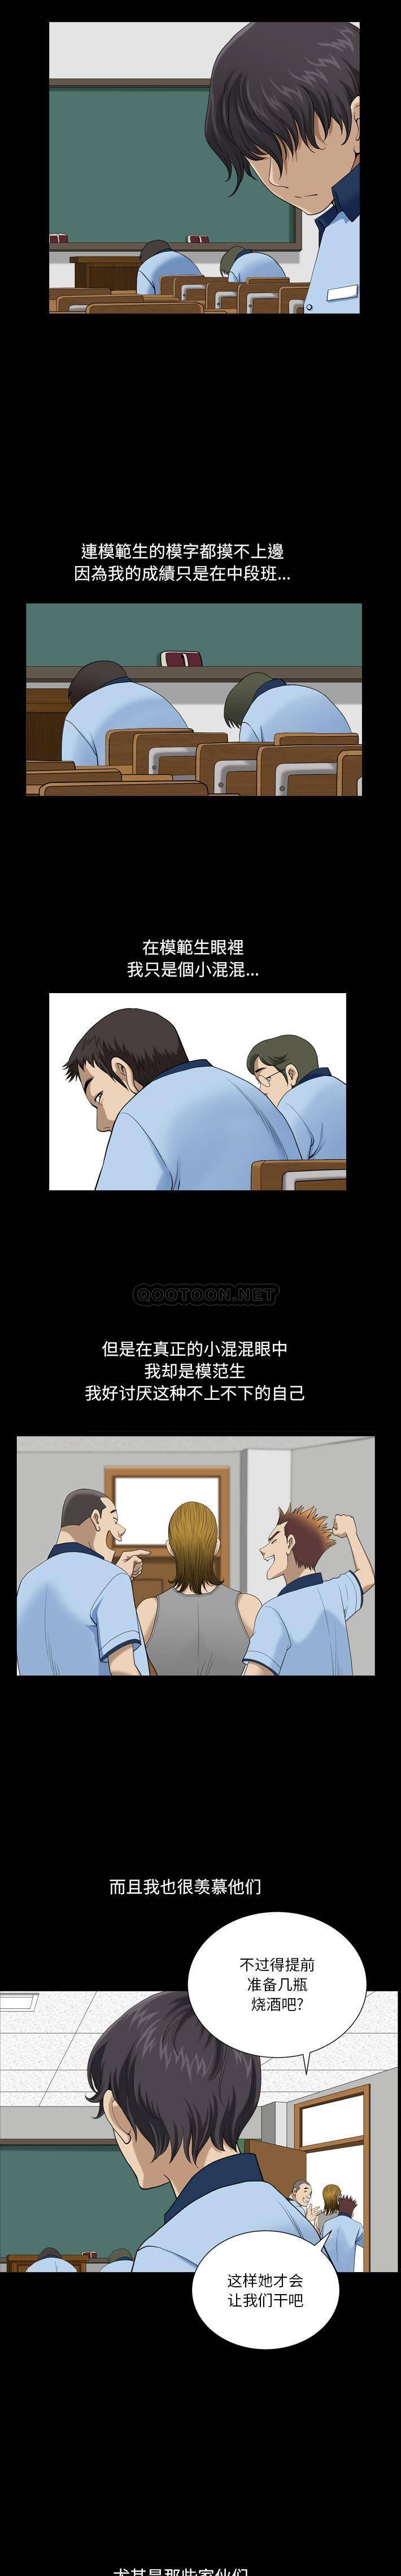 韩国污漫画 墮落的人生 第1话 5